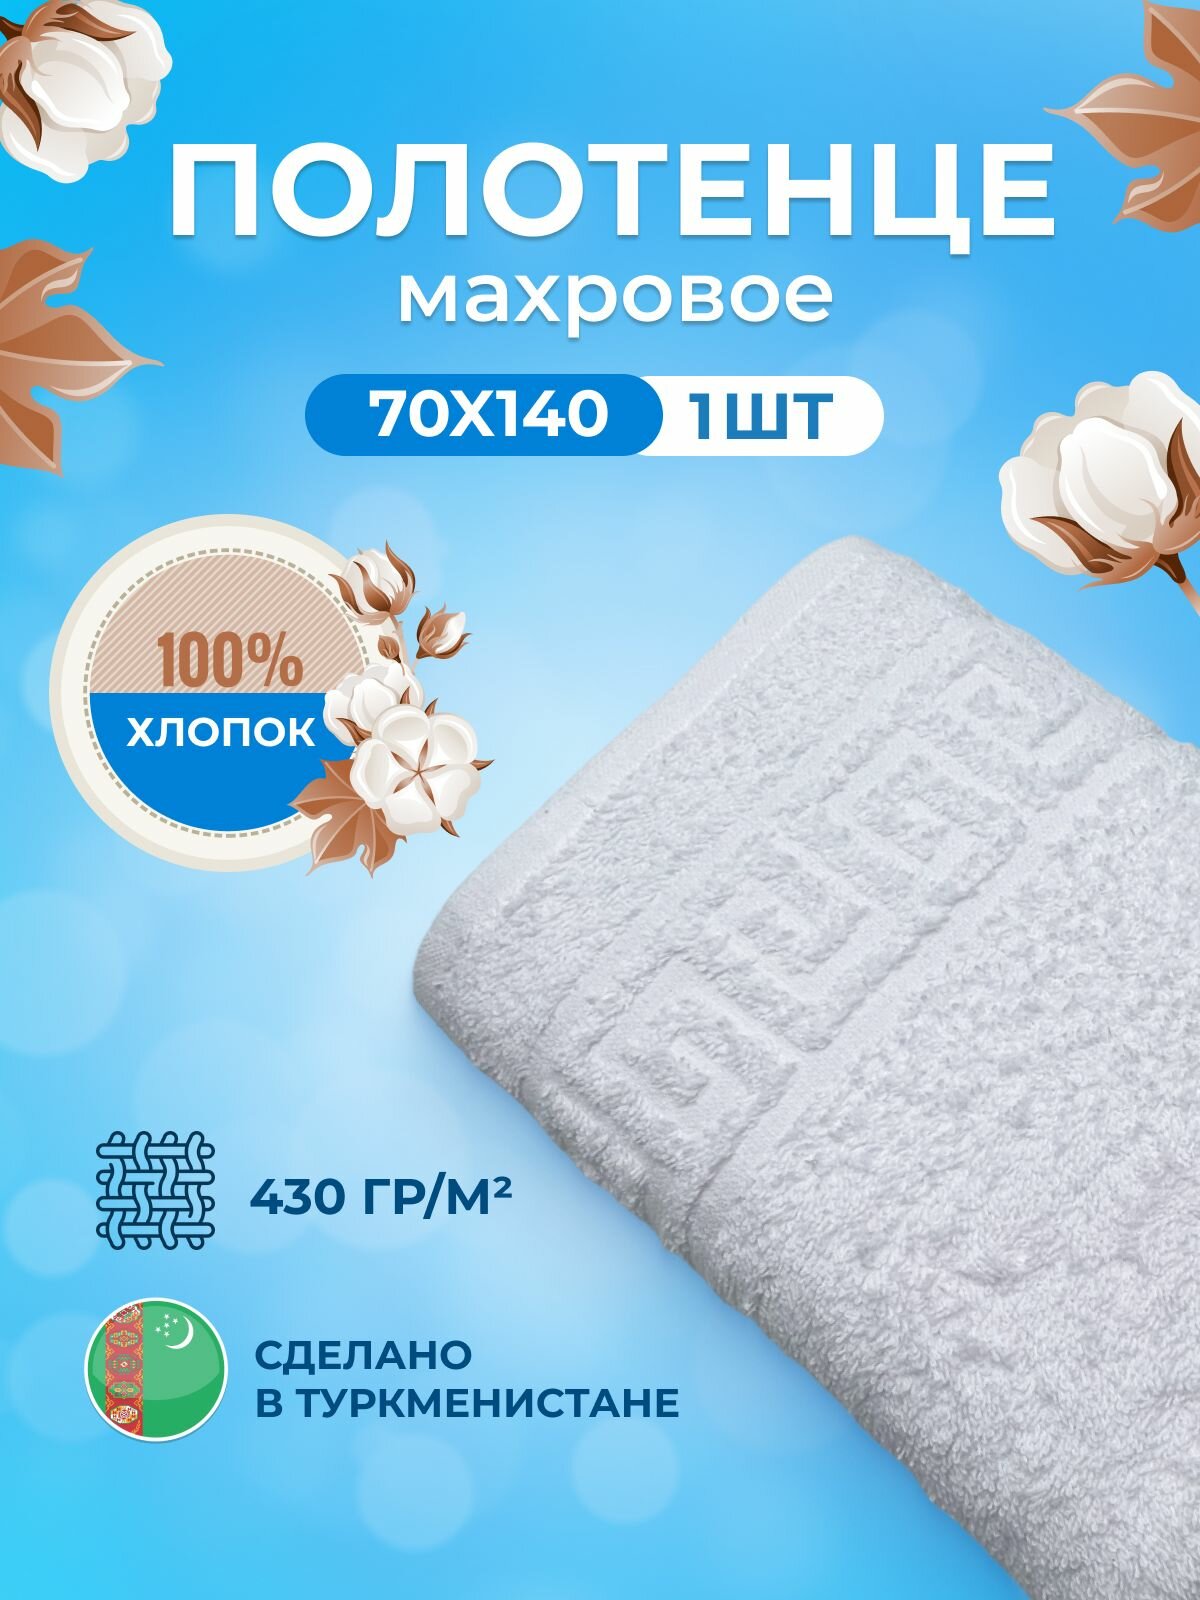 Полотенце махровое/TM TEXTILE/70х140см-1 шт./банное, для тела/хлопок 100%/8 марта,23 февраля, подарки на новый год/Туркменистан 430гр.